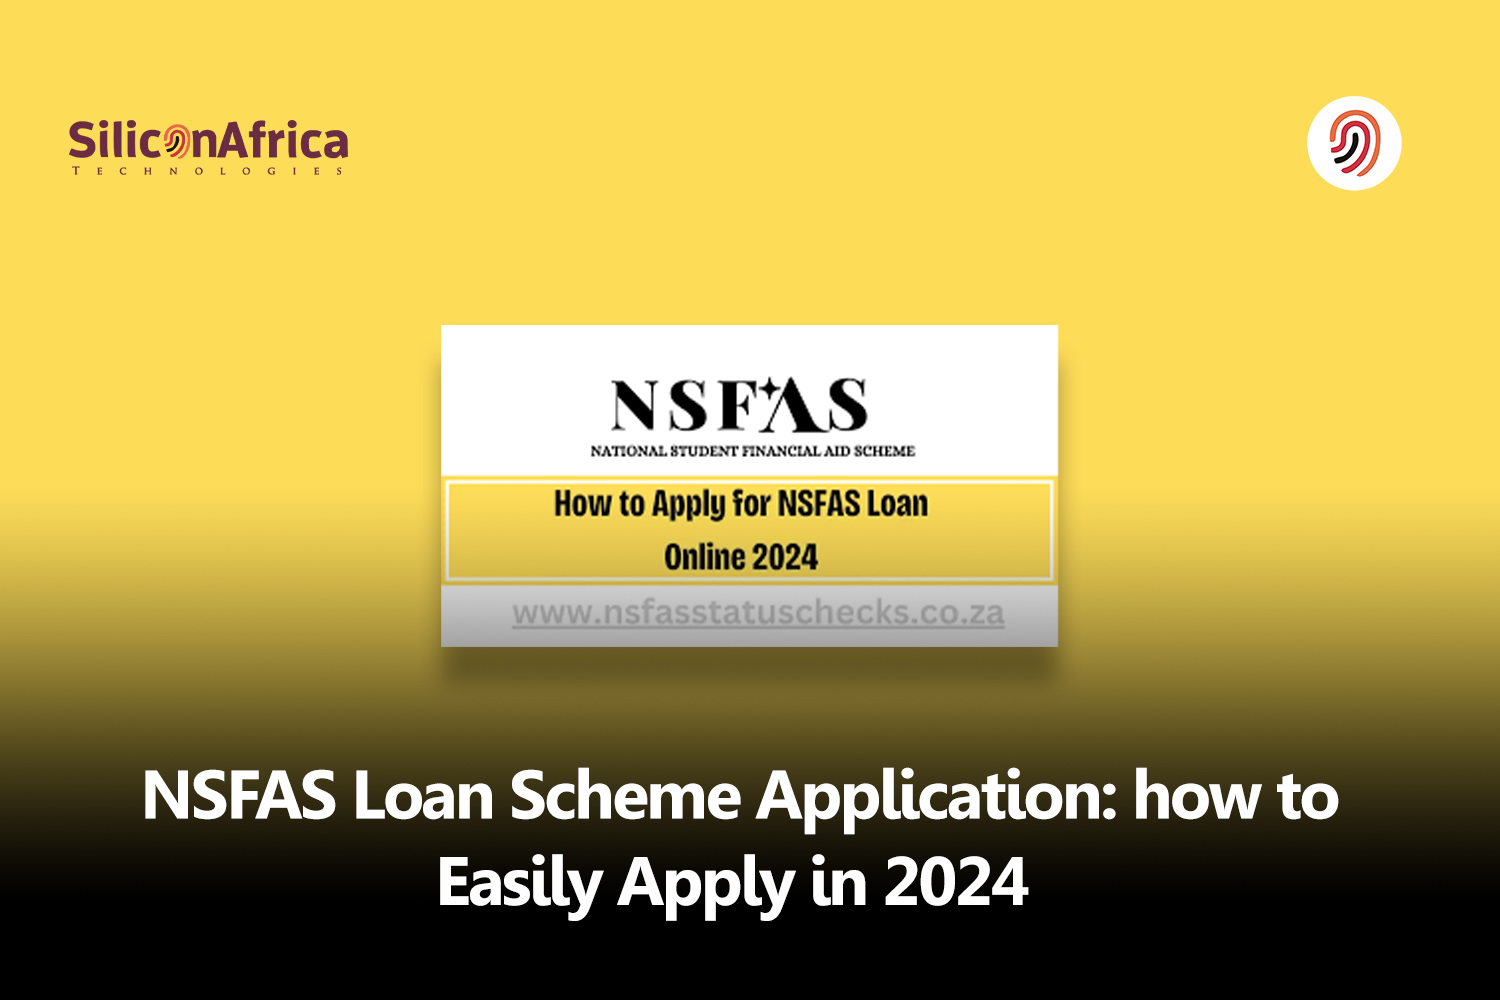 nsfas loan scheme